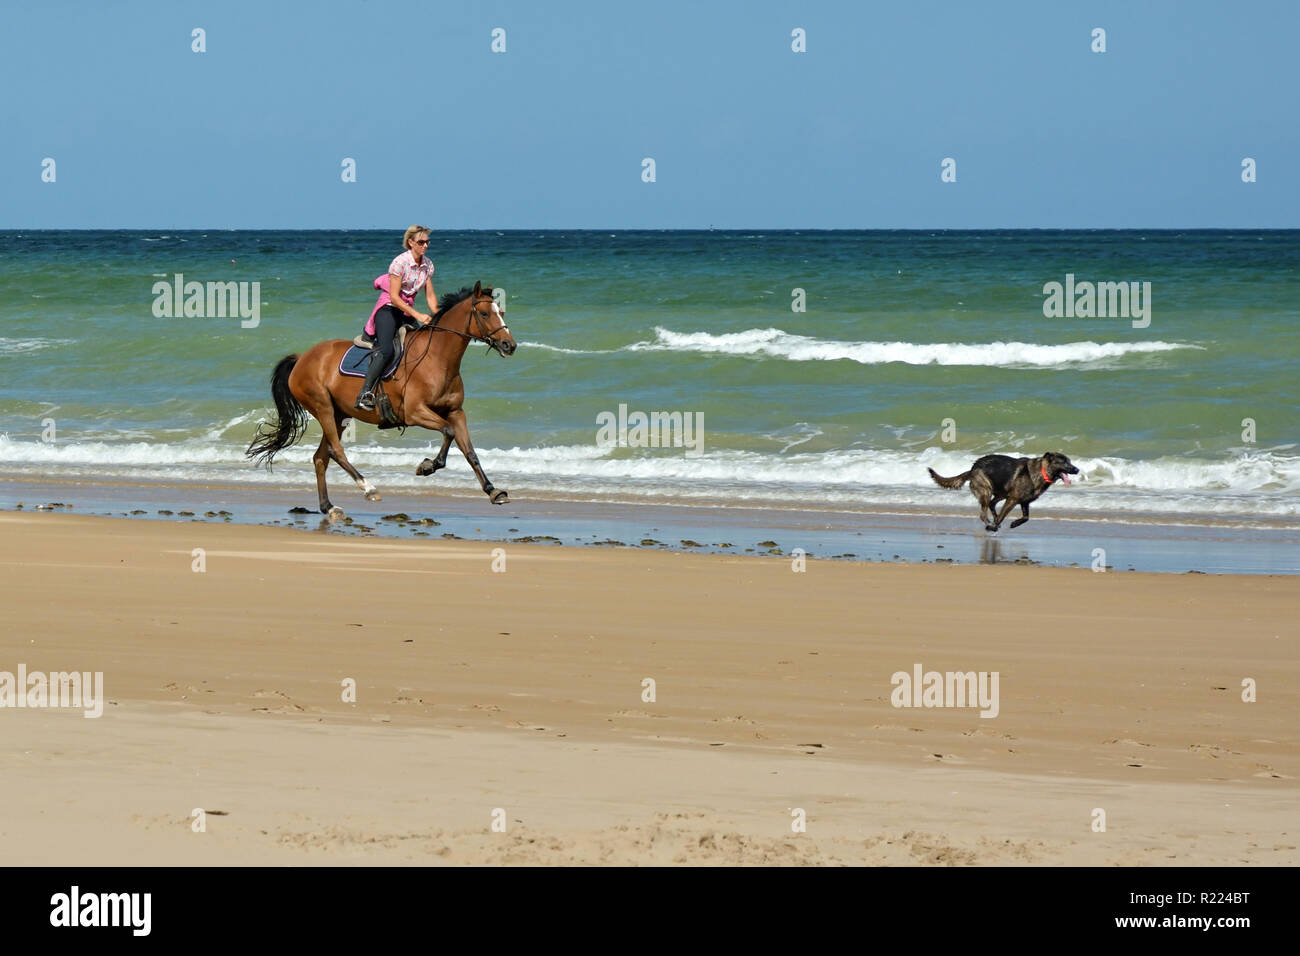 Normandie, Frankreich - September 2016 - junge Frau ihren Hund jagen auf Reiten am Strand in der Normandie, Frankreich Stockfoto